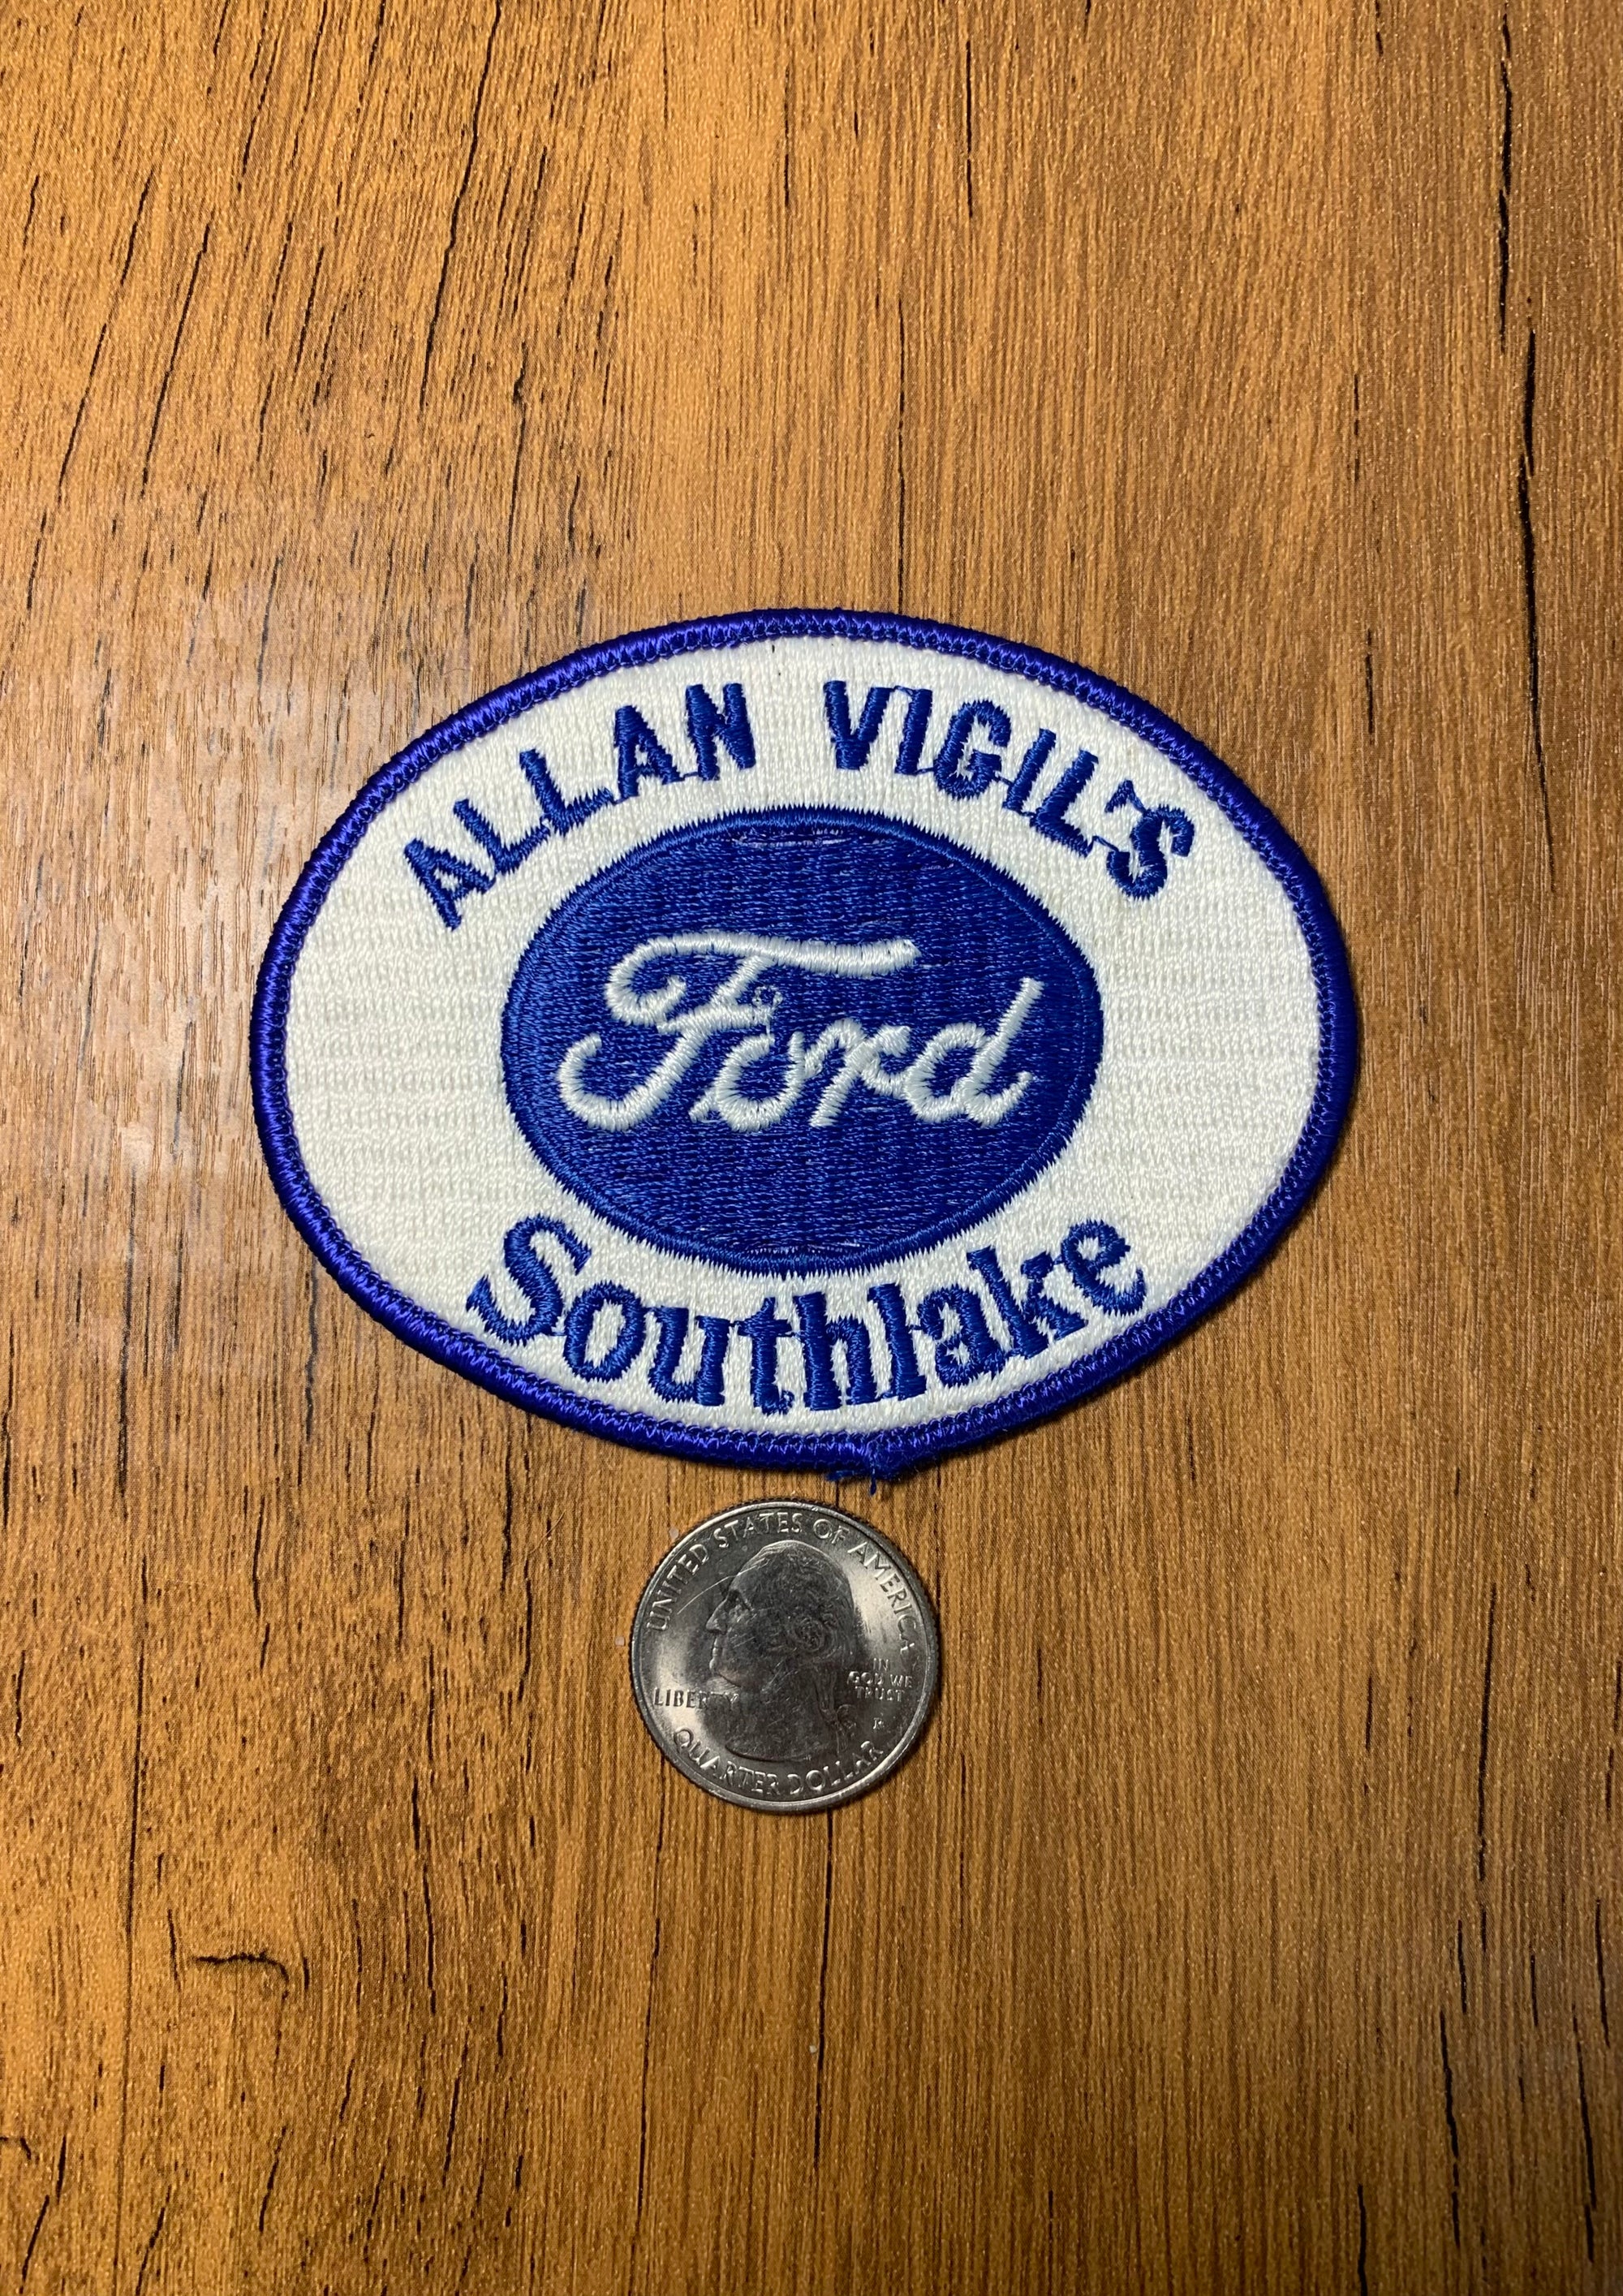 Vintage Allan Vigil’s South Lake- Ford